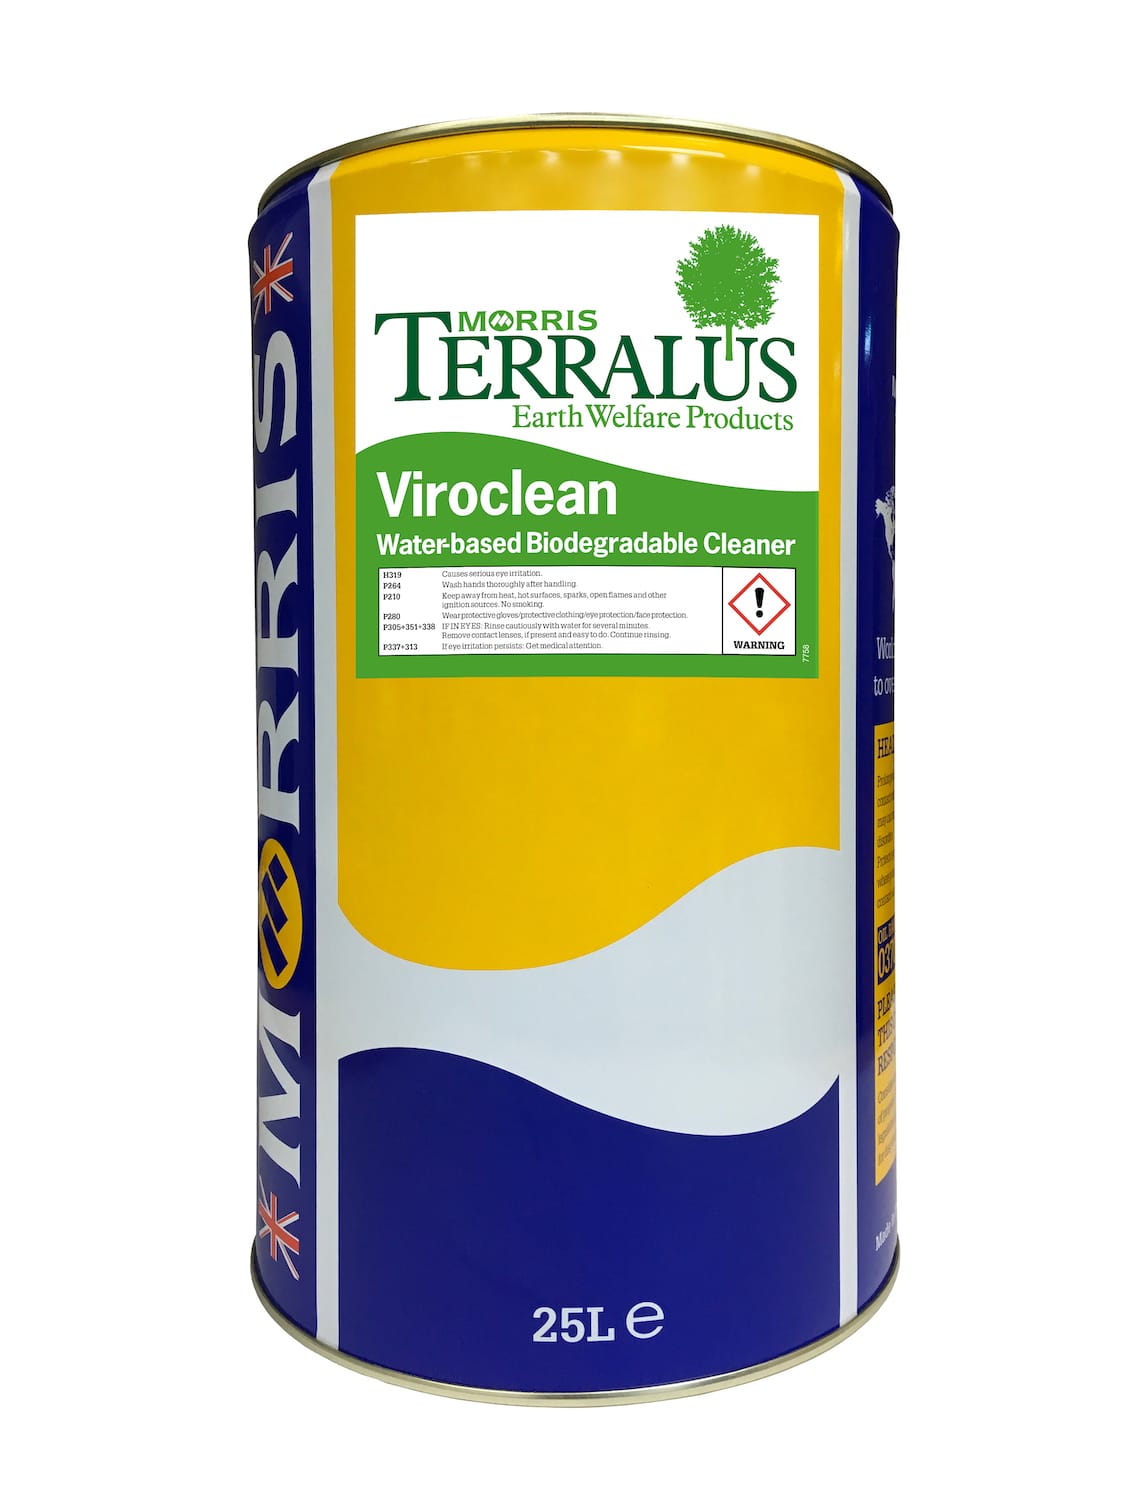 Terralus Viroclean